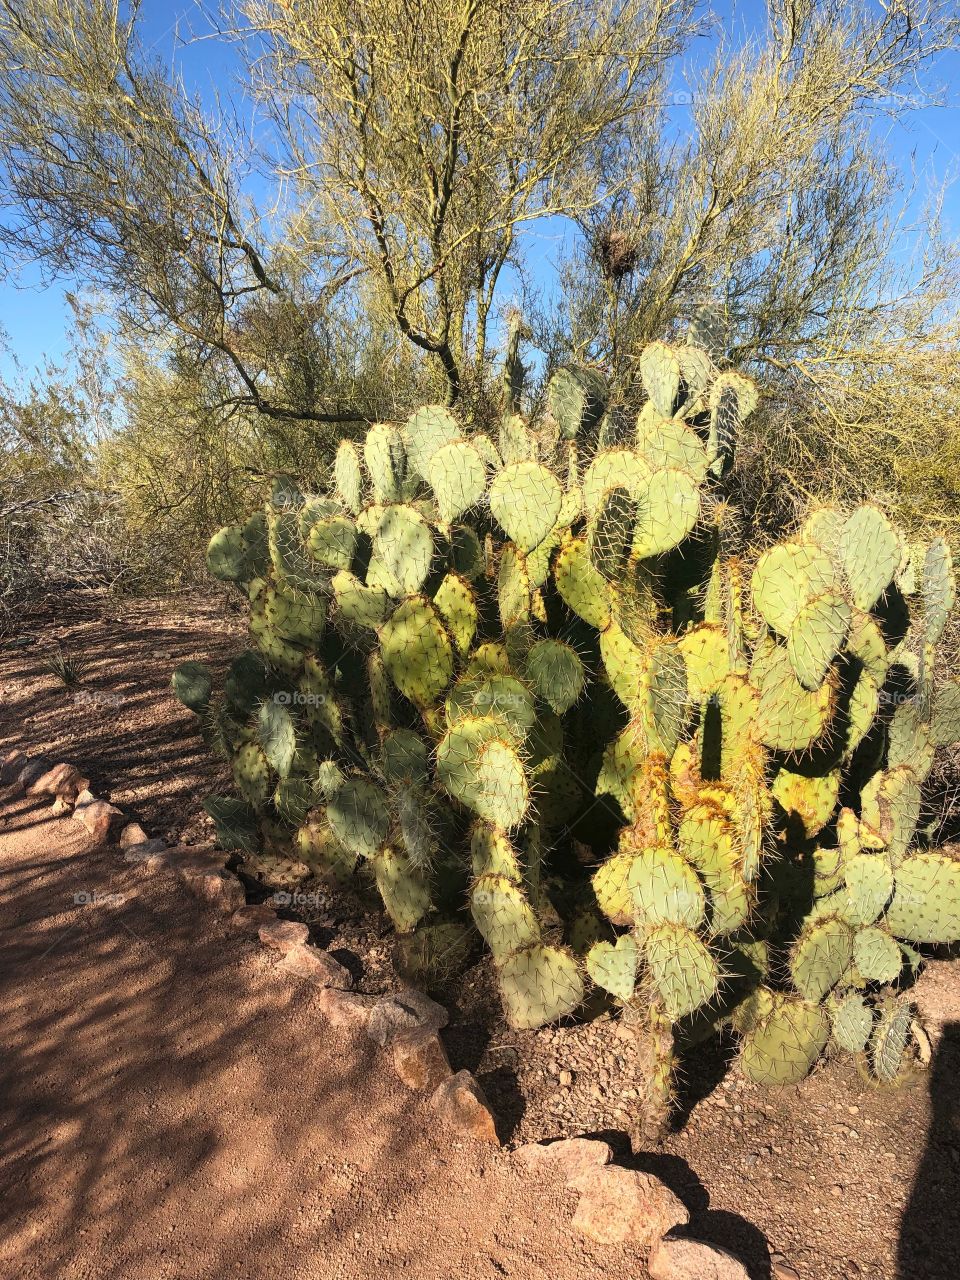 Desert cacti